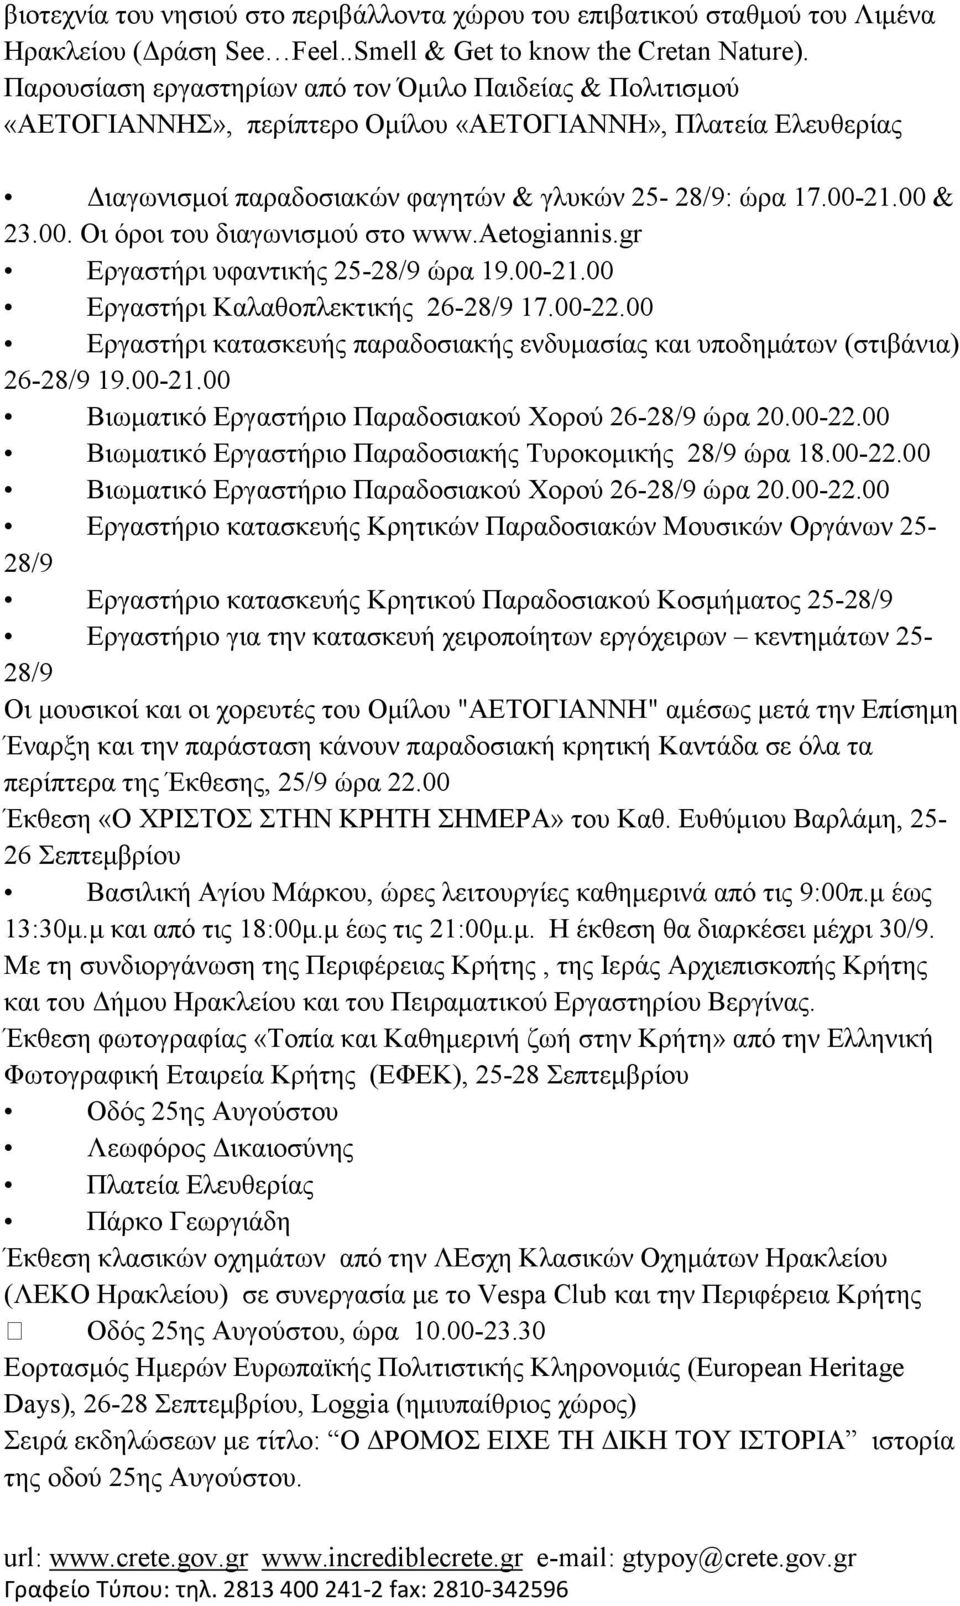 21.00 & 23.00. Οι όροι του διαγωνισµού στο www.aetogiannis.gr Εργαστήρι υφαντικής 25-28/9 ώρα 19.00-21.00 Εργαστήρι Καλαθοπλεκτικής 26-28/9 17.00-22.